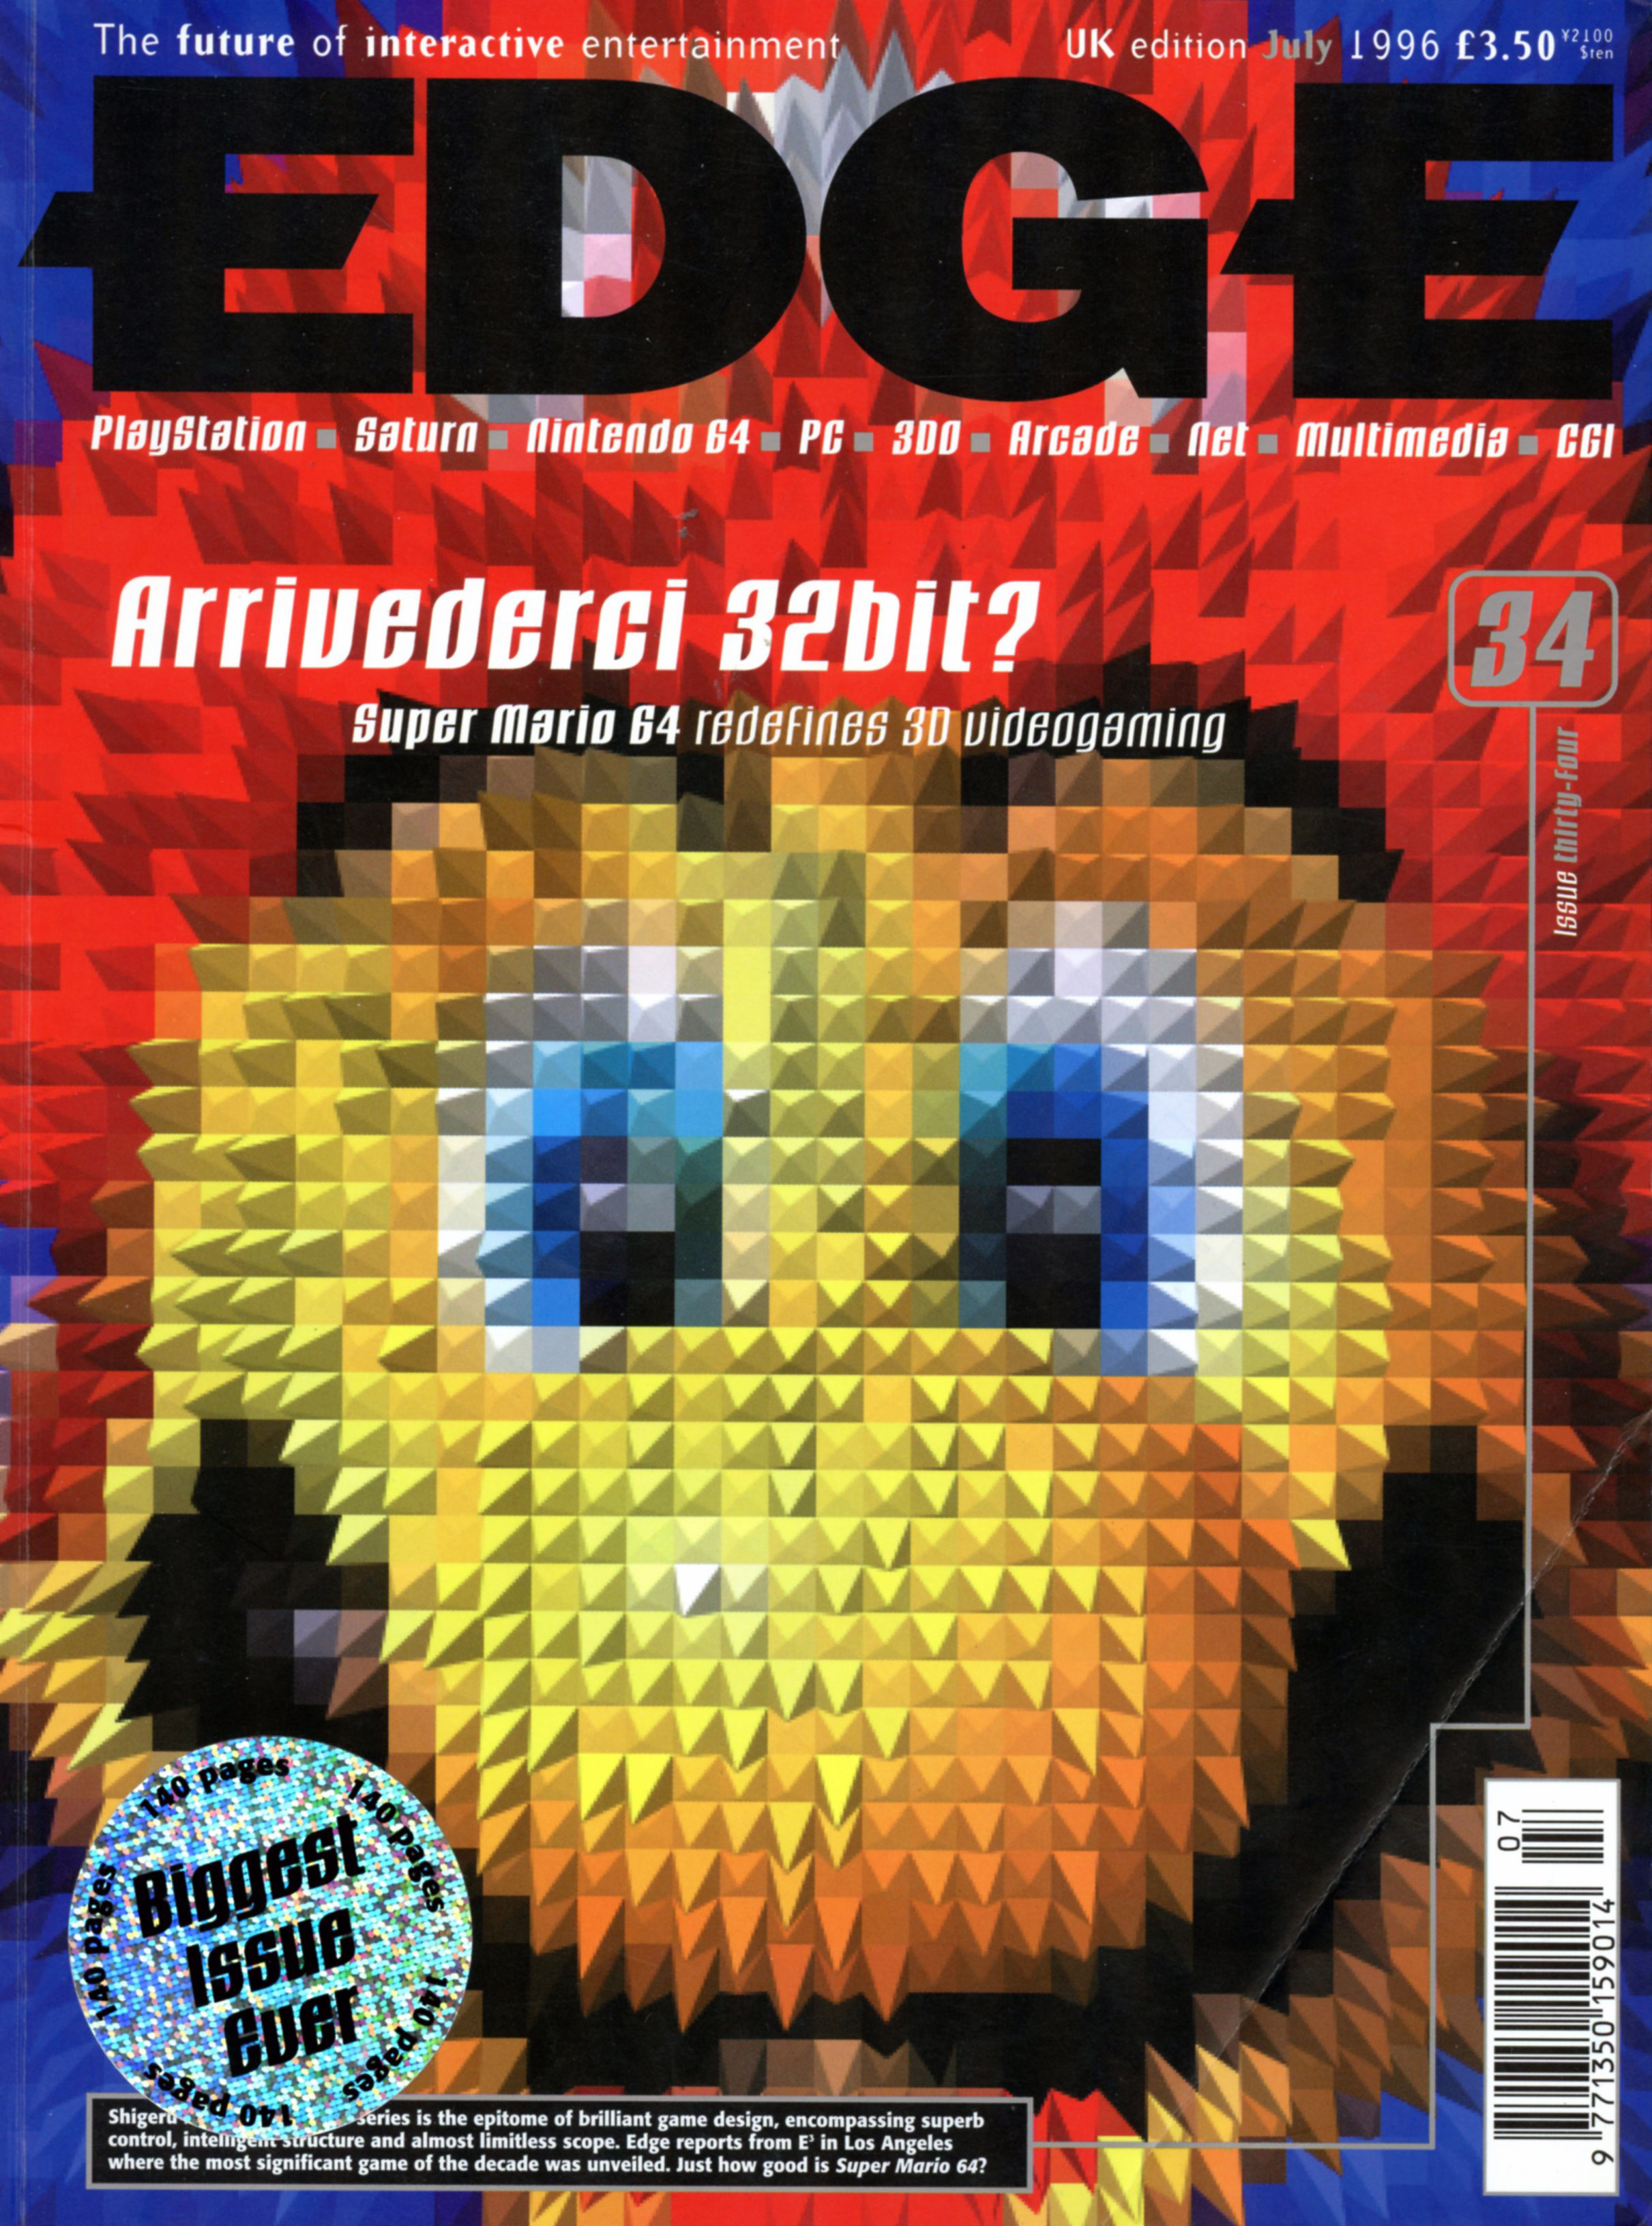 Edge Magazine, July 1996